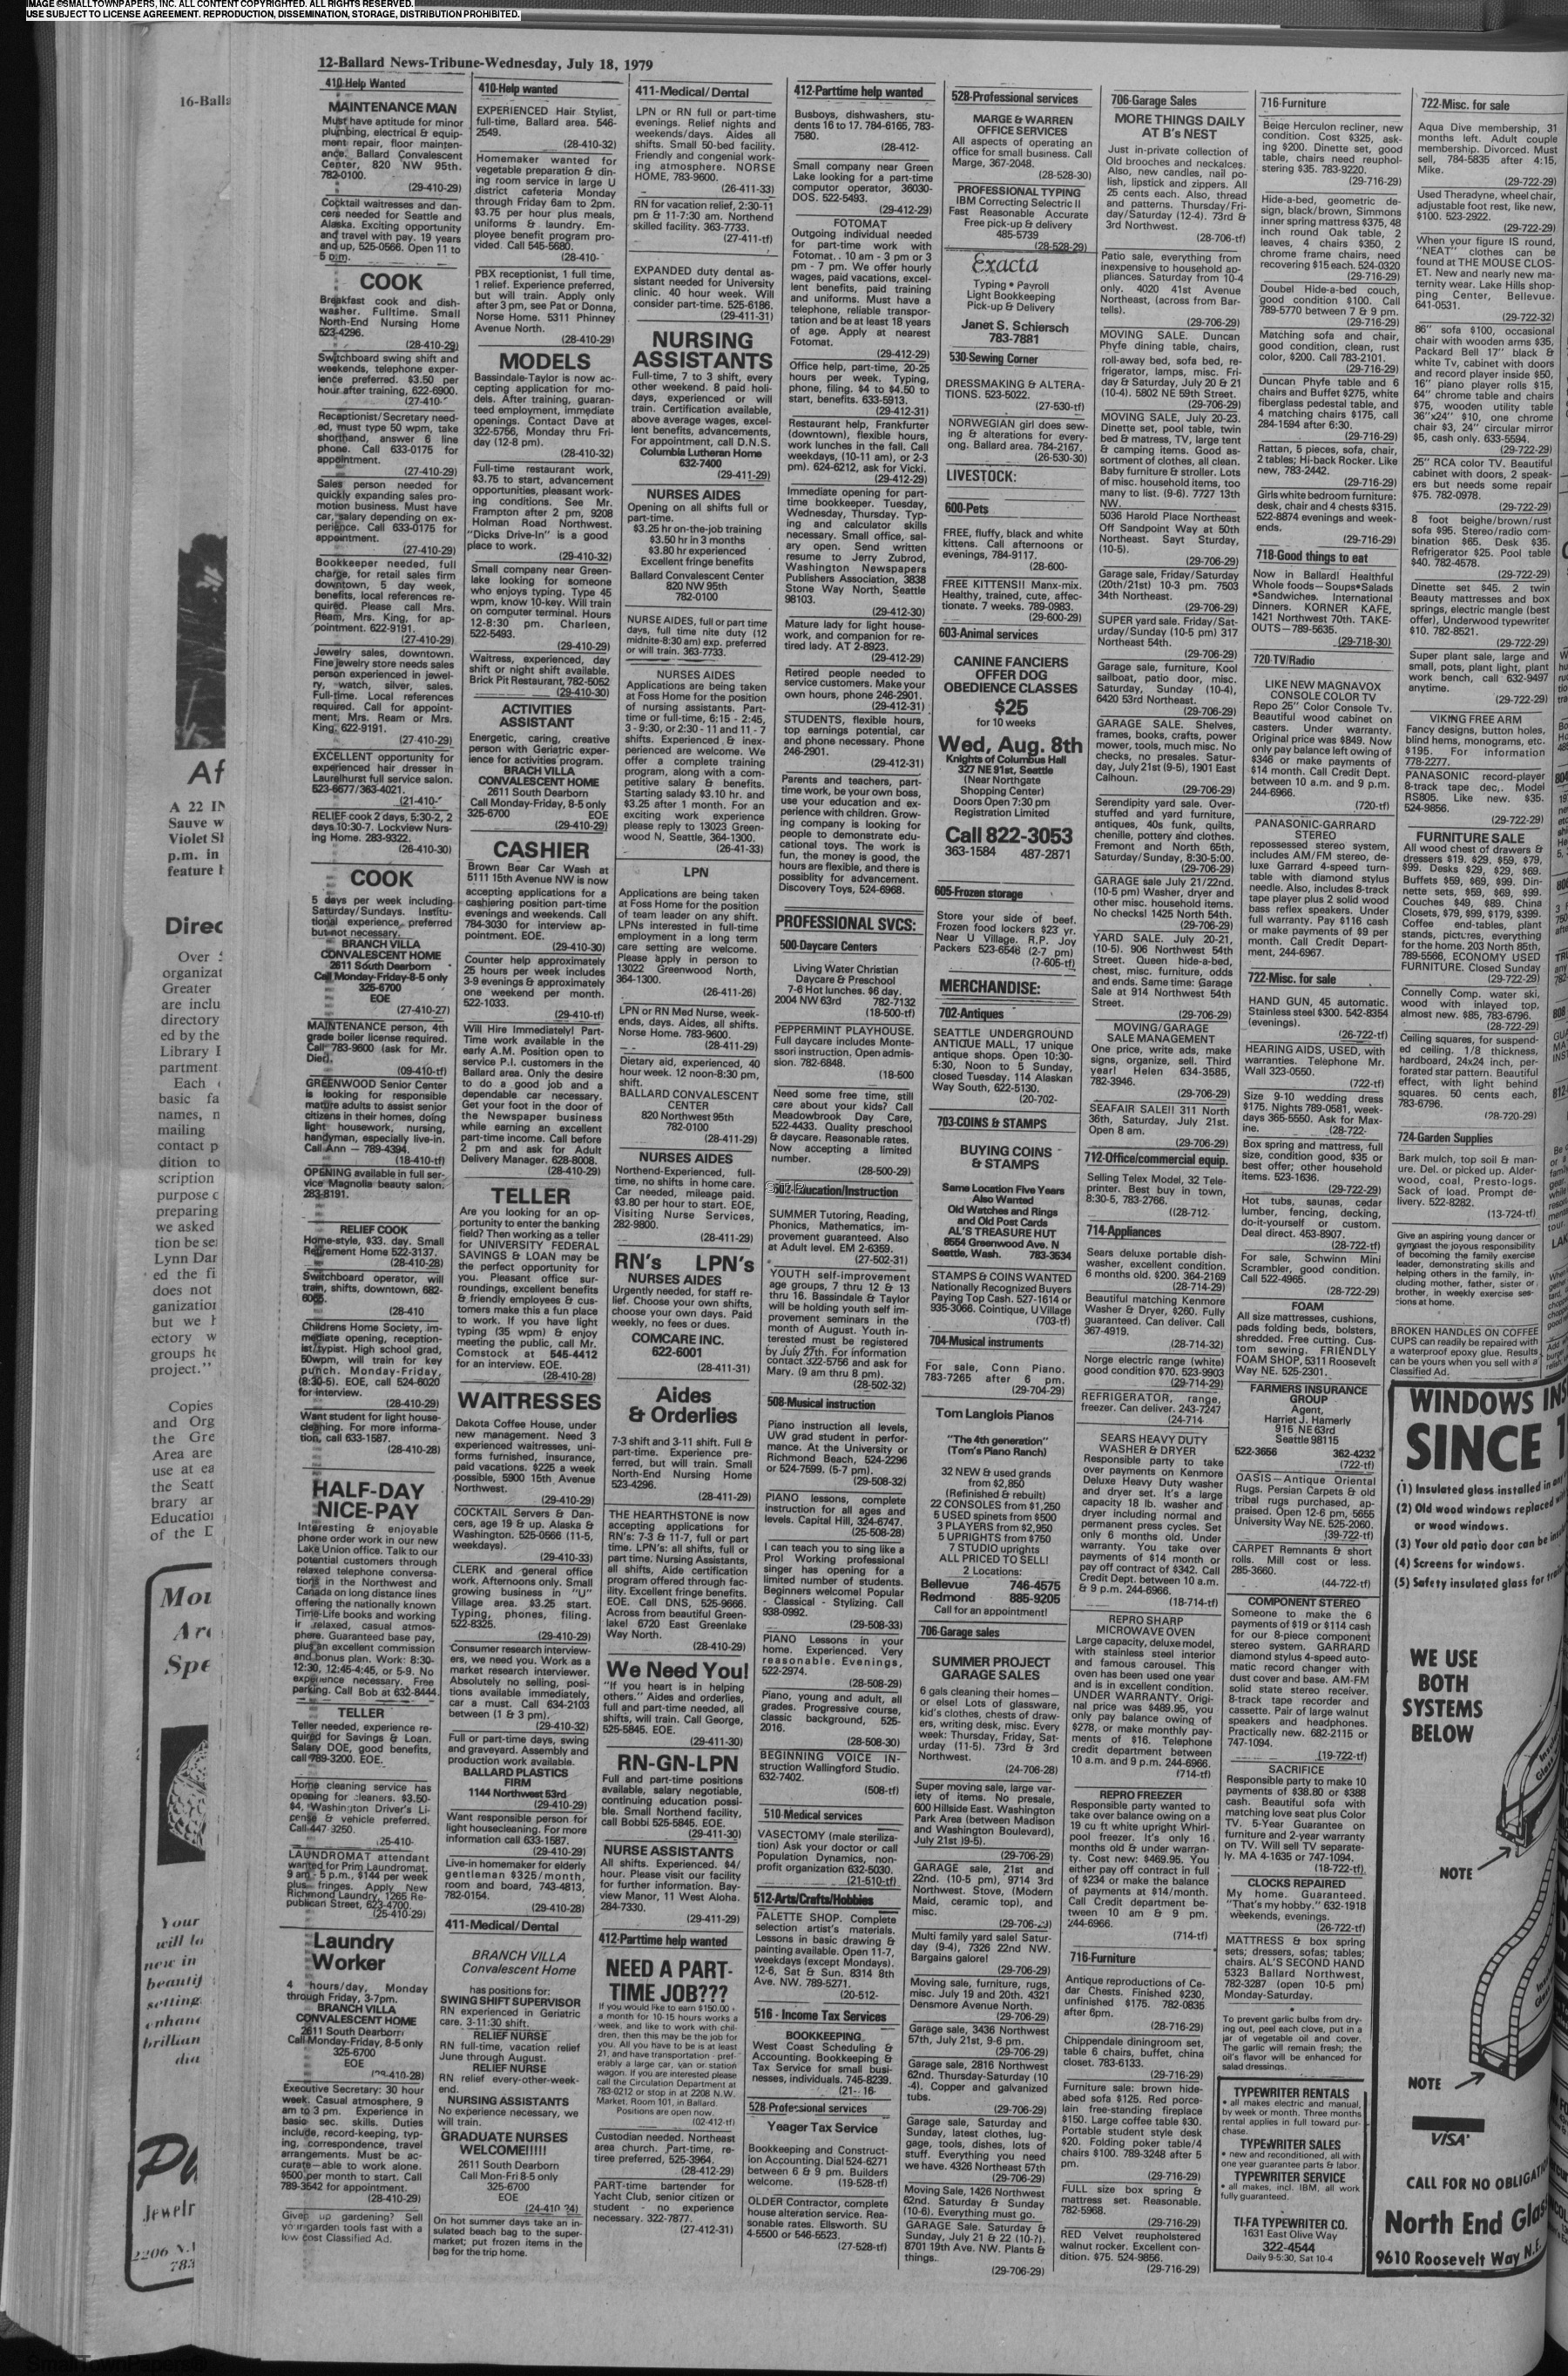 Acme Stove and Fireplace Best Of Ballard News Tribune July 18 1979 Page 12